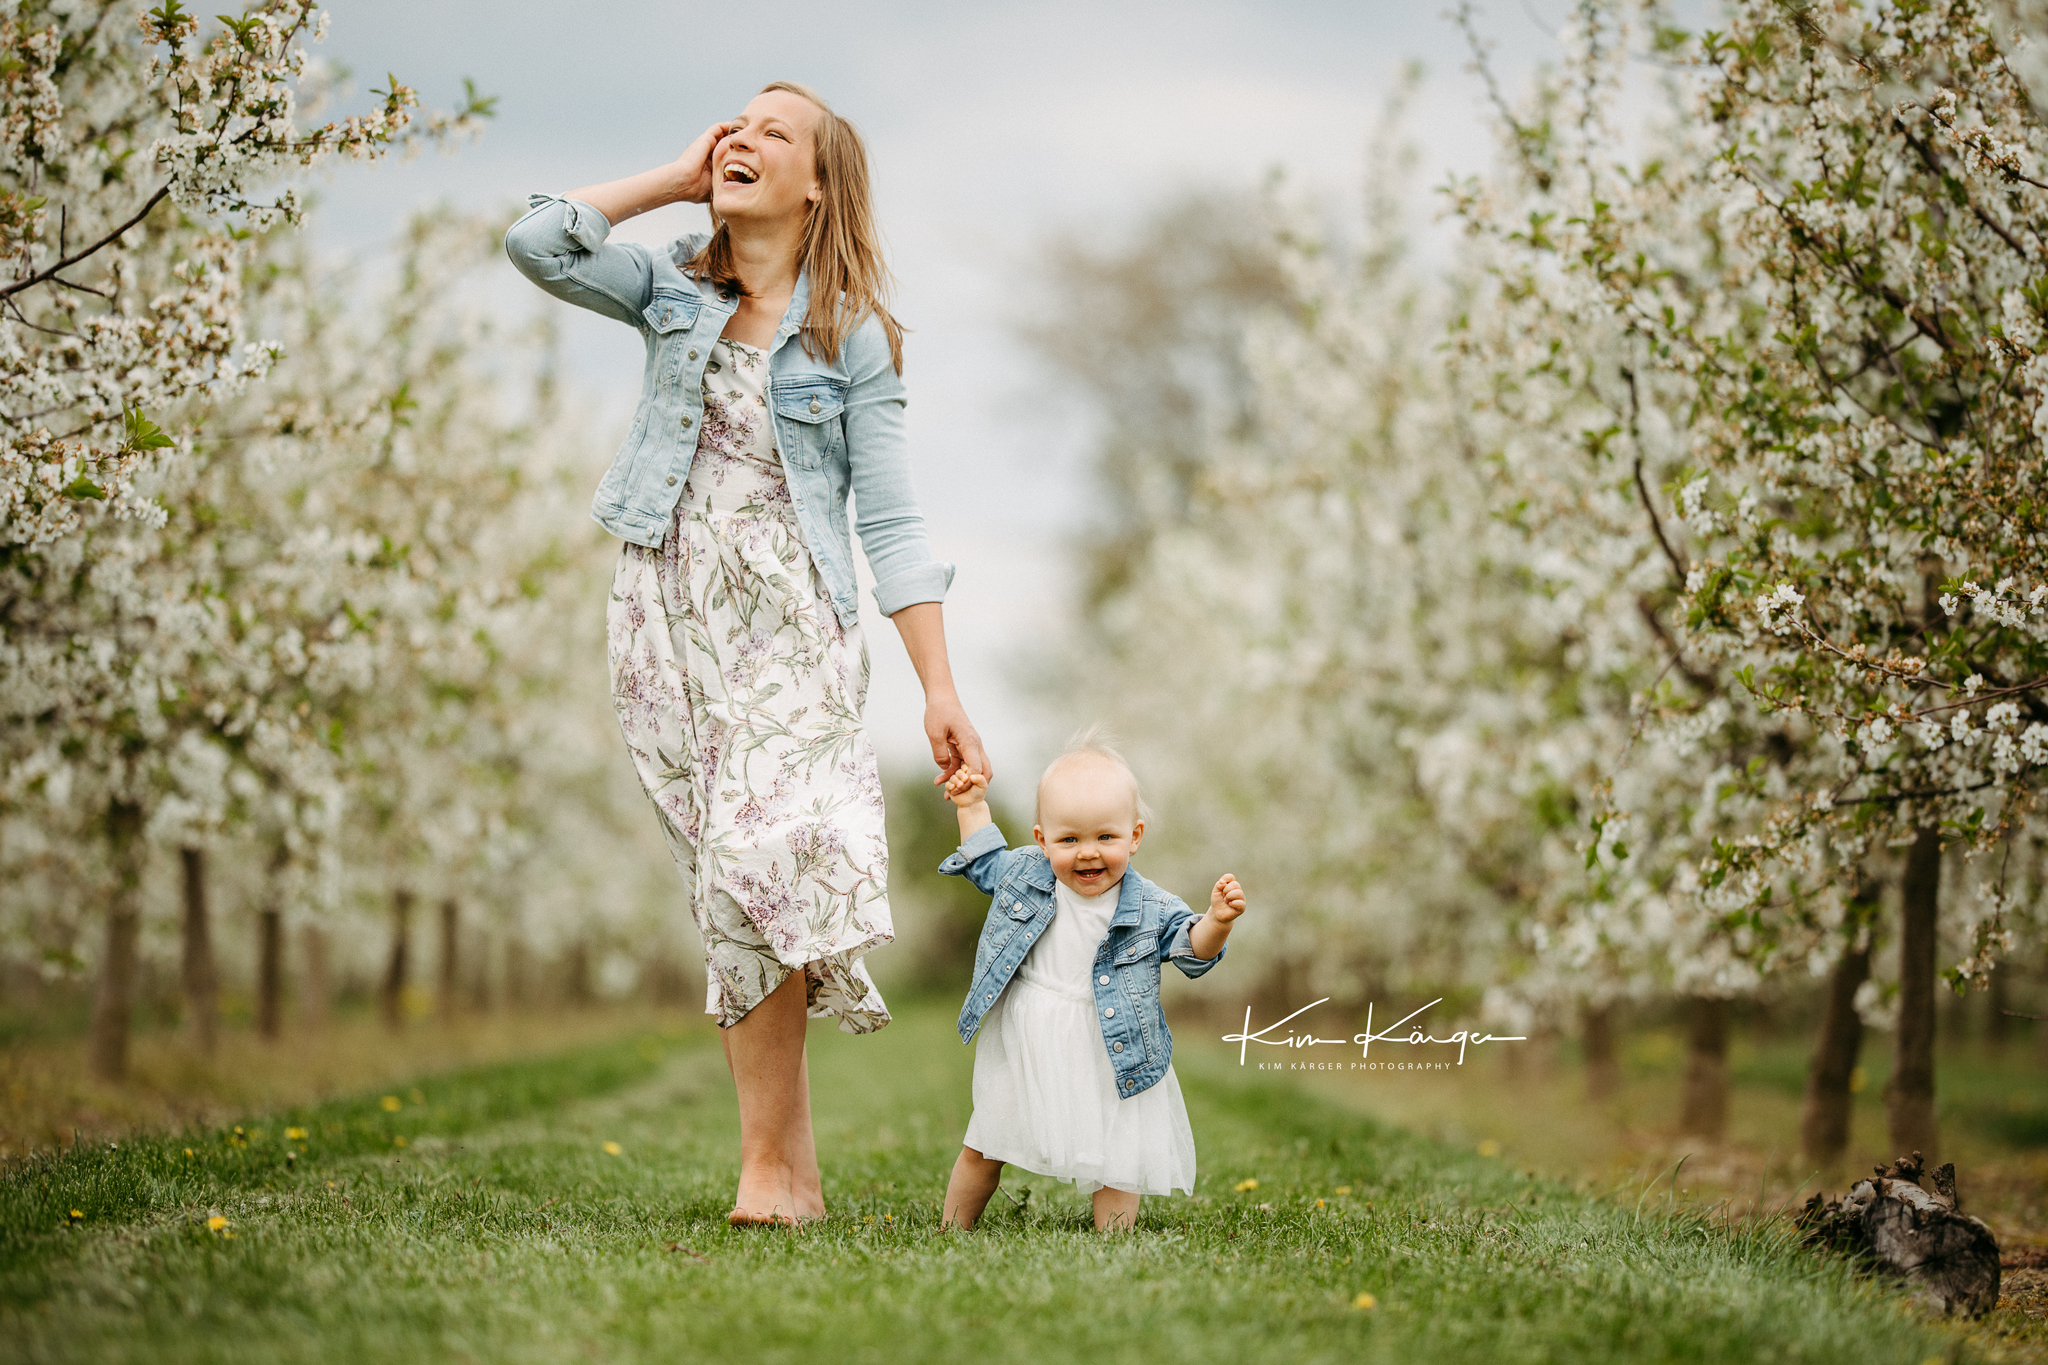 Familienfotoshooting mit Mama und Kind in einer Kirschblütenplantage nähe Hannover